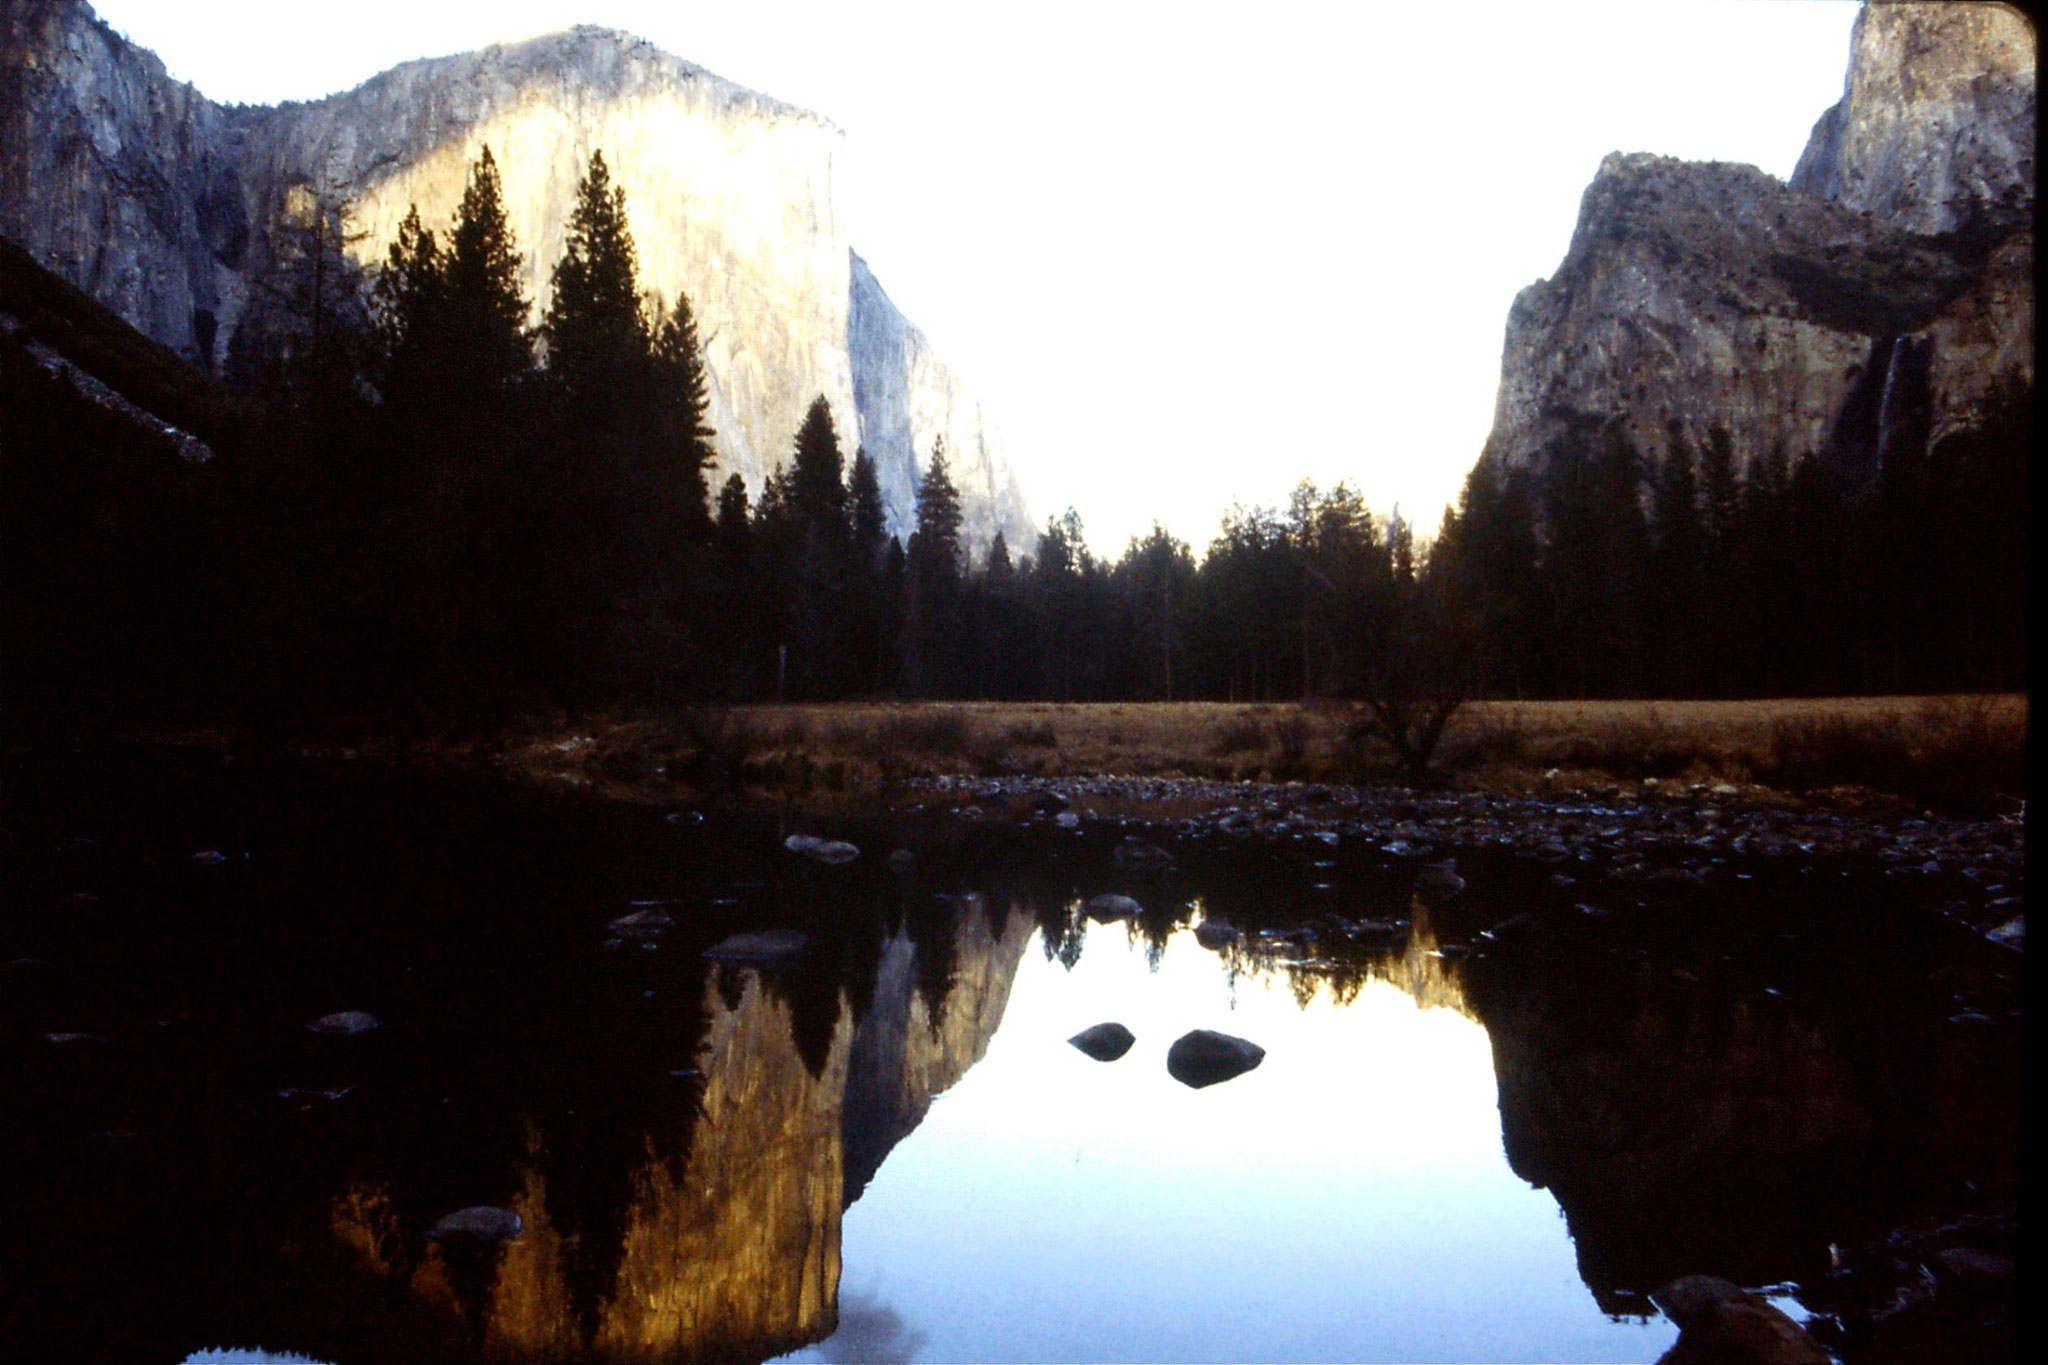 16/2/1991: 31: Yosemite, view of El Capitan